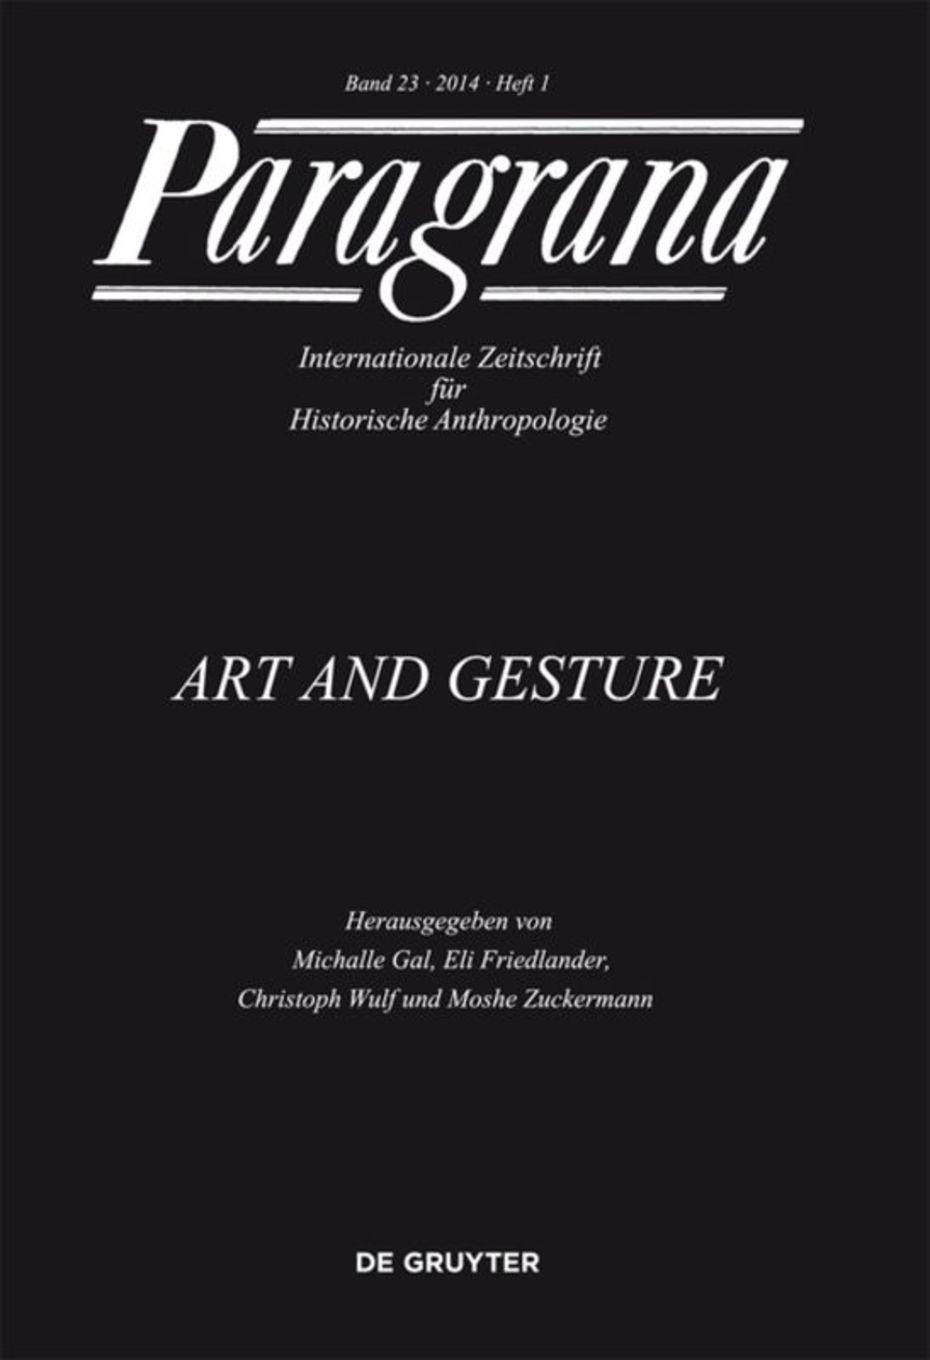 Paragrana - Internationale Zeitschrift für Historische Anthropologie (Cover)